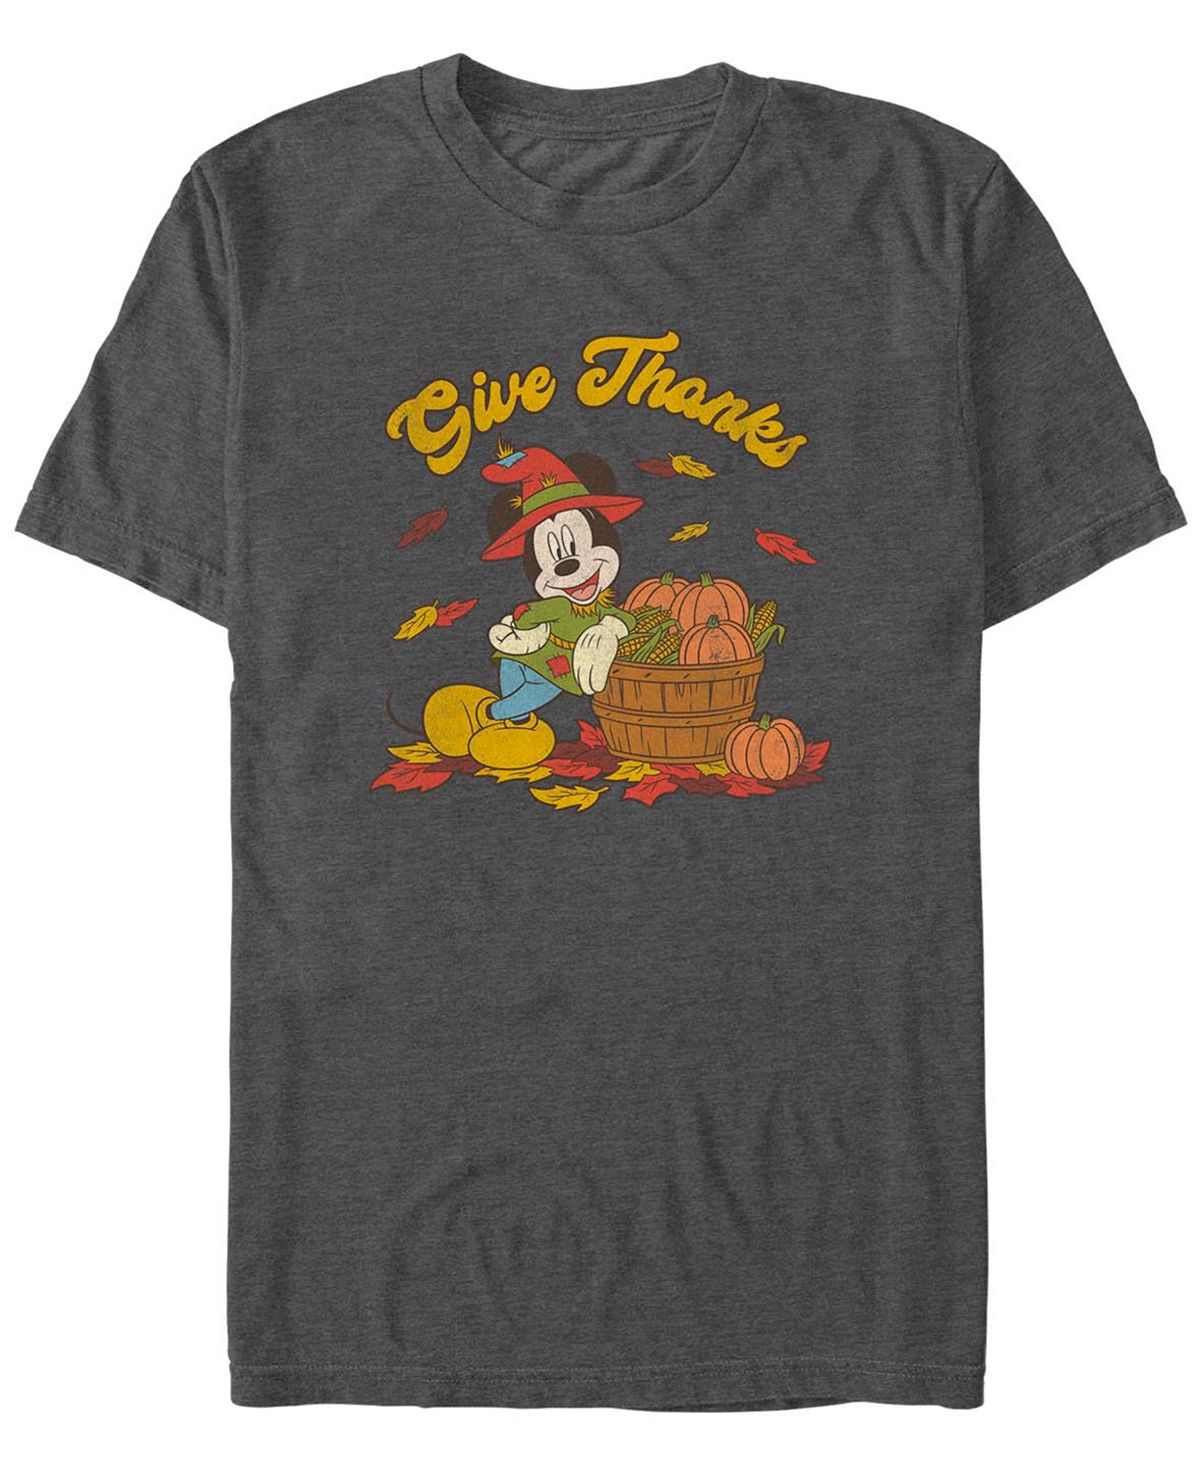 Мужская футболка с короткими рукавами mickey classic thankful mouse Fifth Sun, мульти